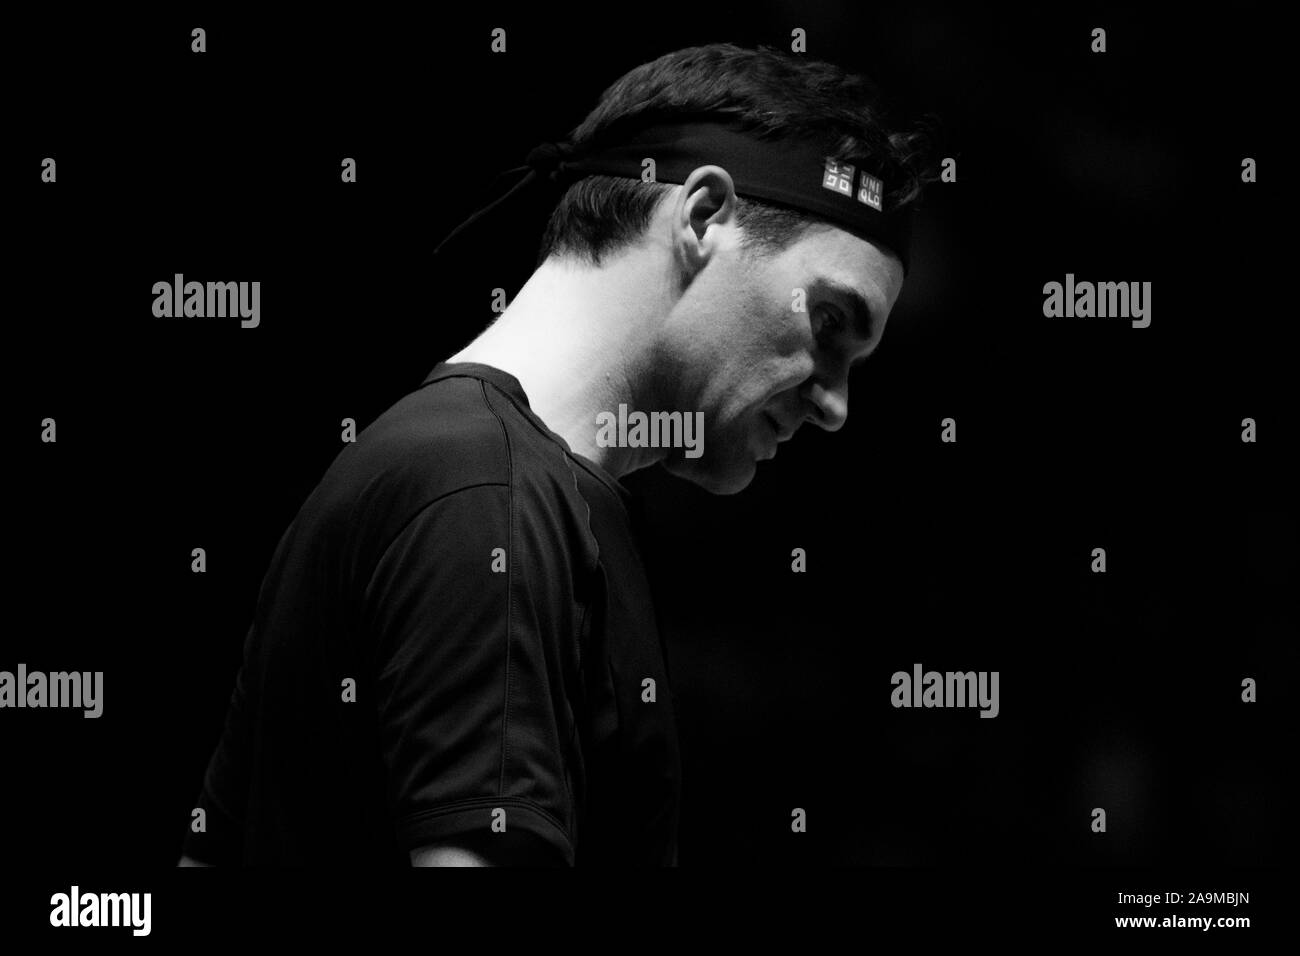 Londres, Royaume-Uni. 16 Nov, 2019. La Suisse de Roger Federer joue contre Stefanos Tsitsipas de Grèce pendant la demi-finale sur la septième journée de la Nitto ATP World Tour finals à l'O2 Arena le 16 novembre 2019 à Londres, en Angleterre. Agence Photo crédit : indépendante/Alamy Live News Banque D'Images